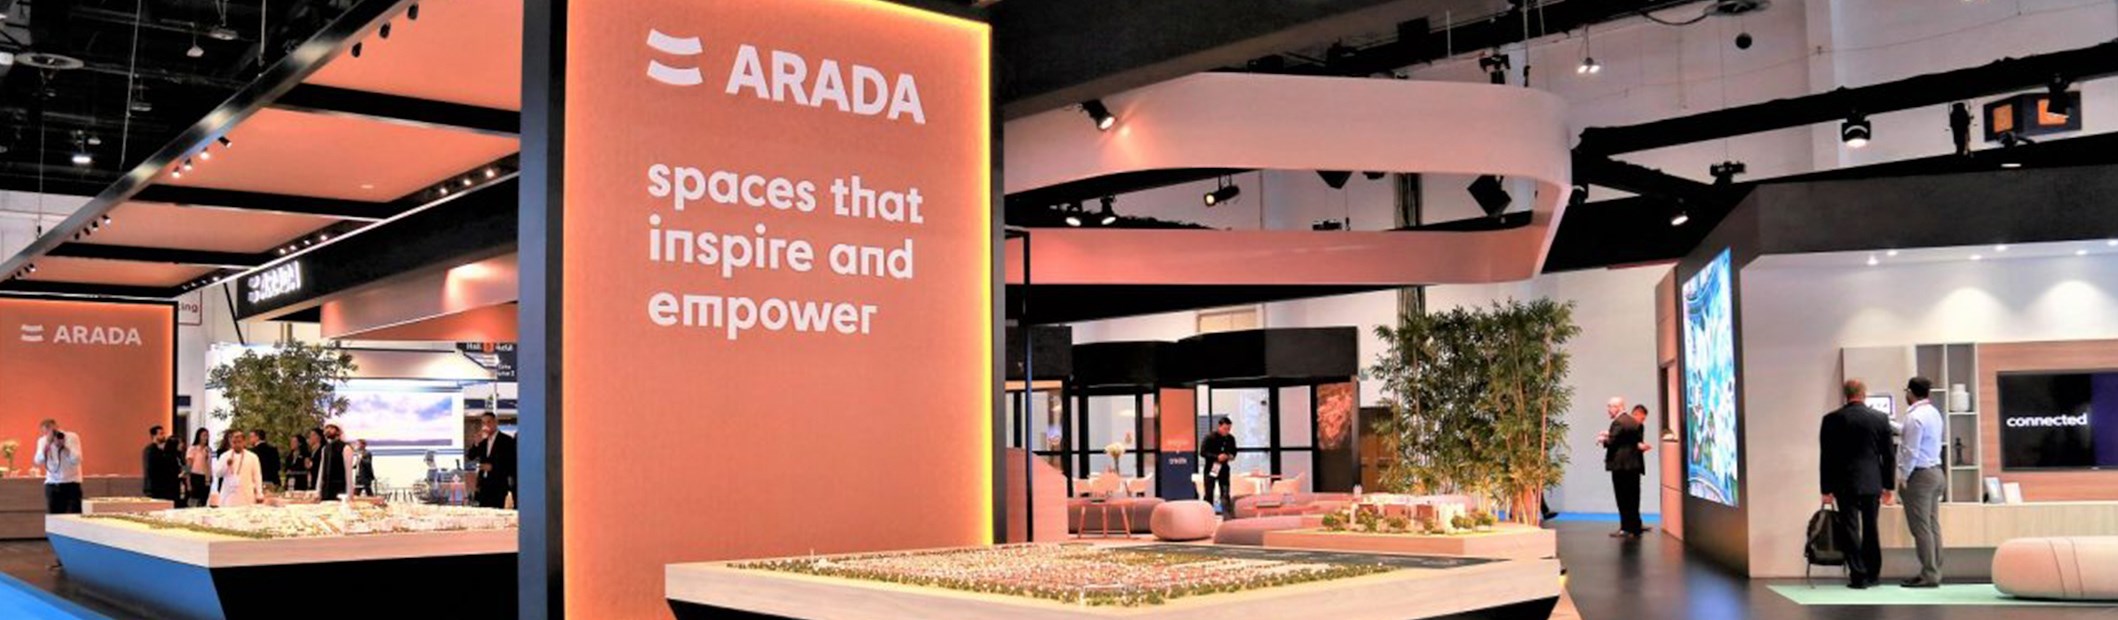 Arada exhibits design ethos at Cityscape in Dubai